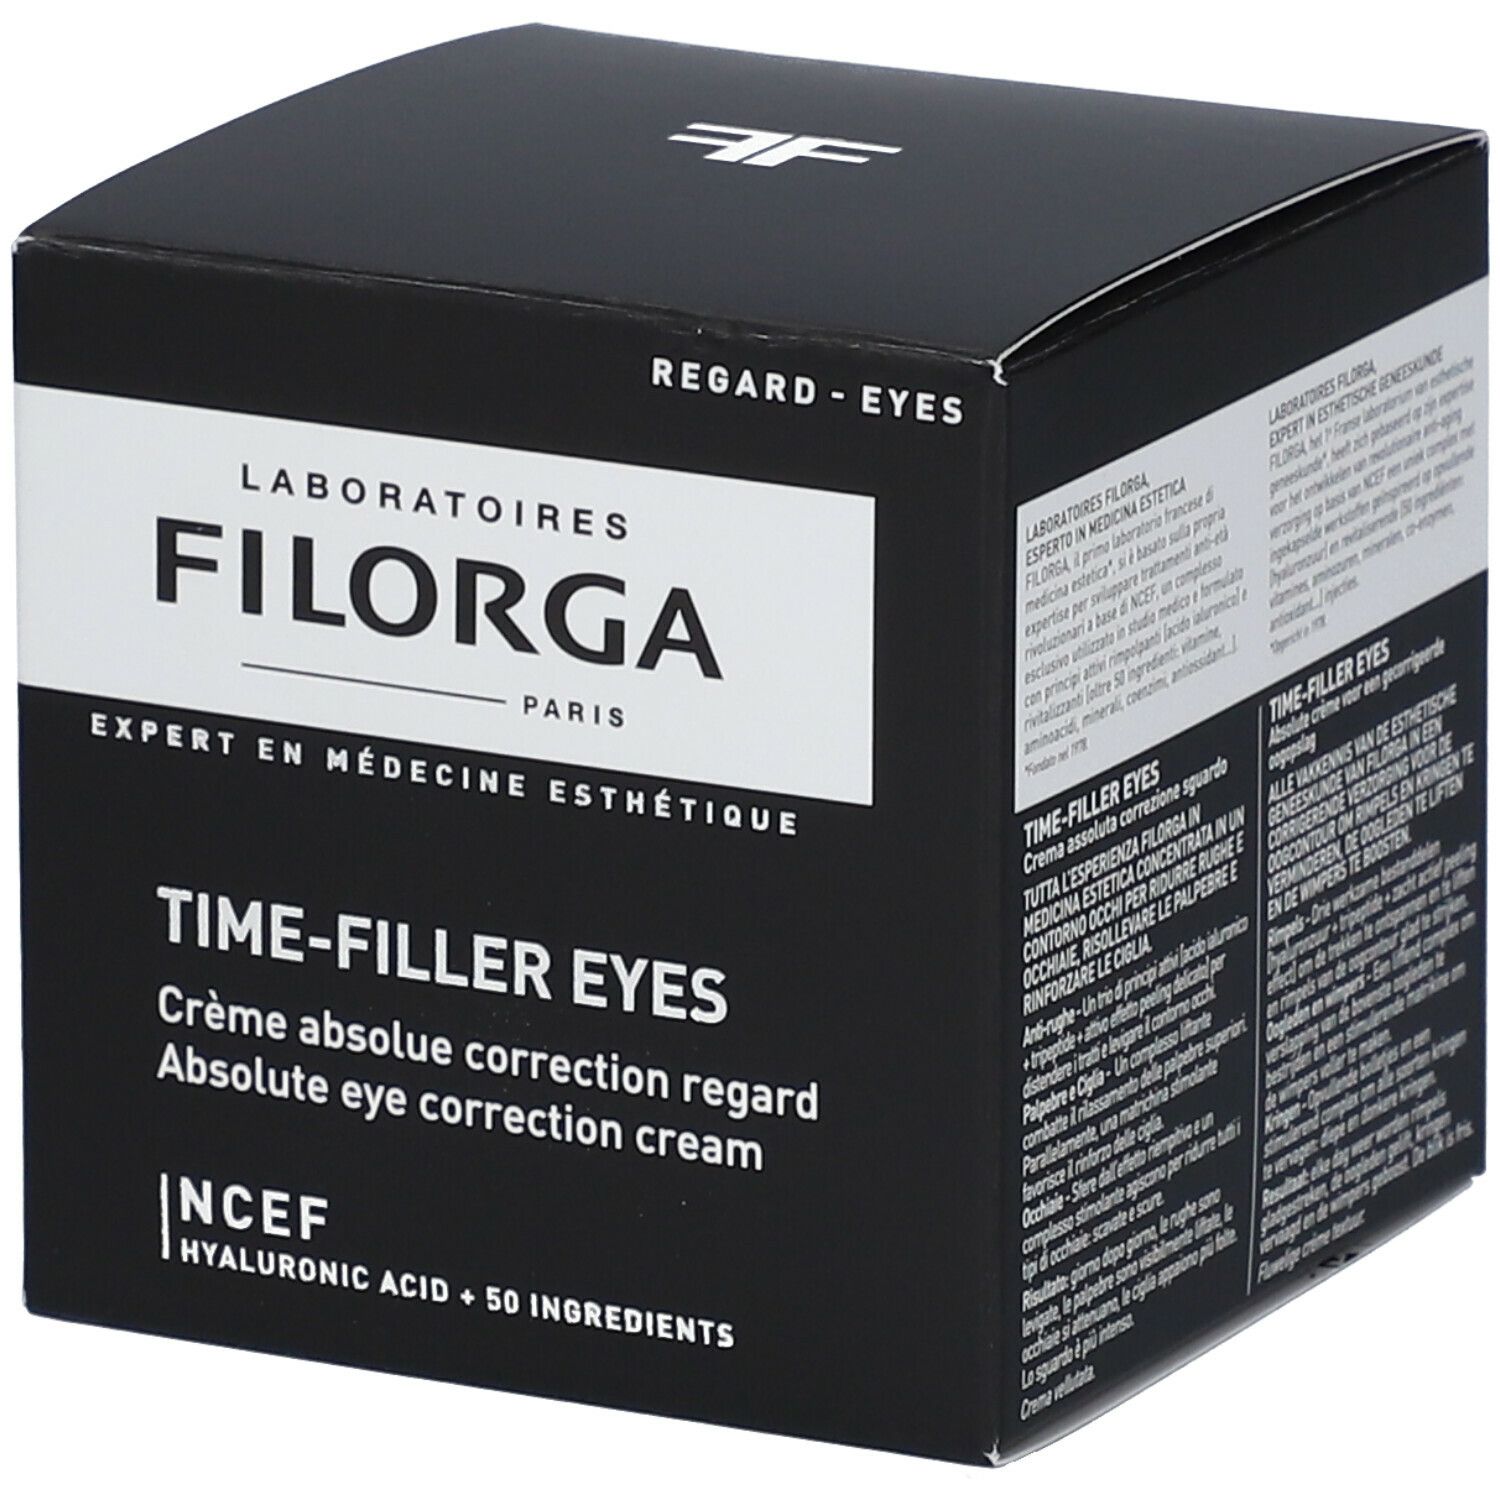 Filorga Time-Filler Eyes® Crème absolue correction regard